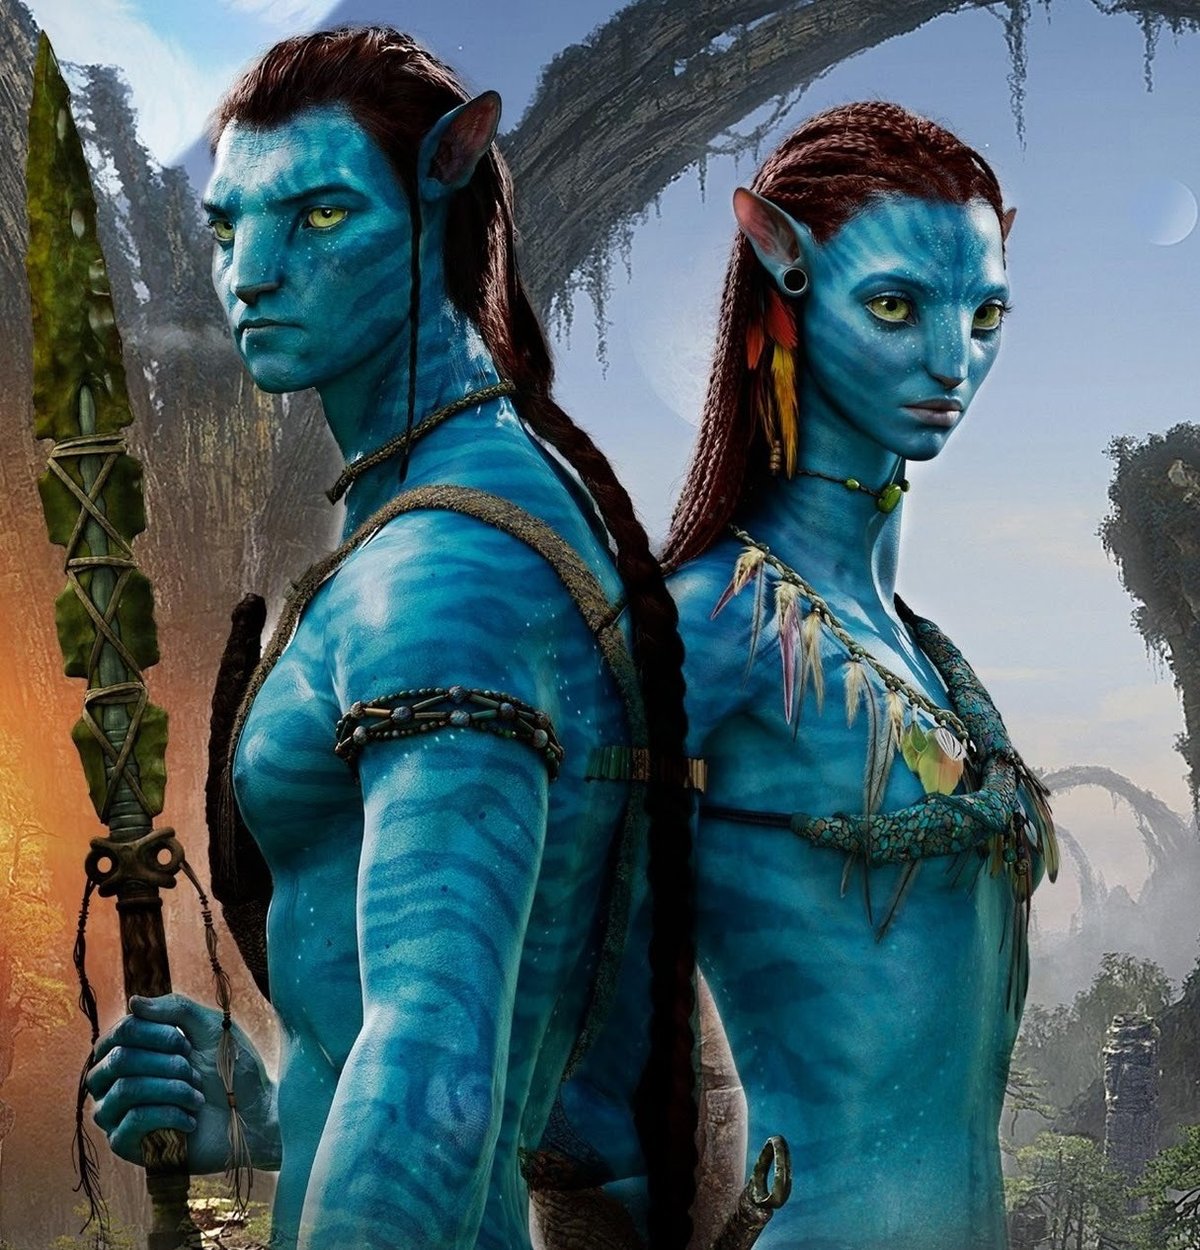 Některé postavy jsou podobné těm z Avatara.